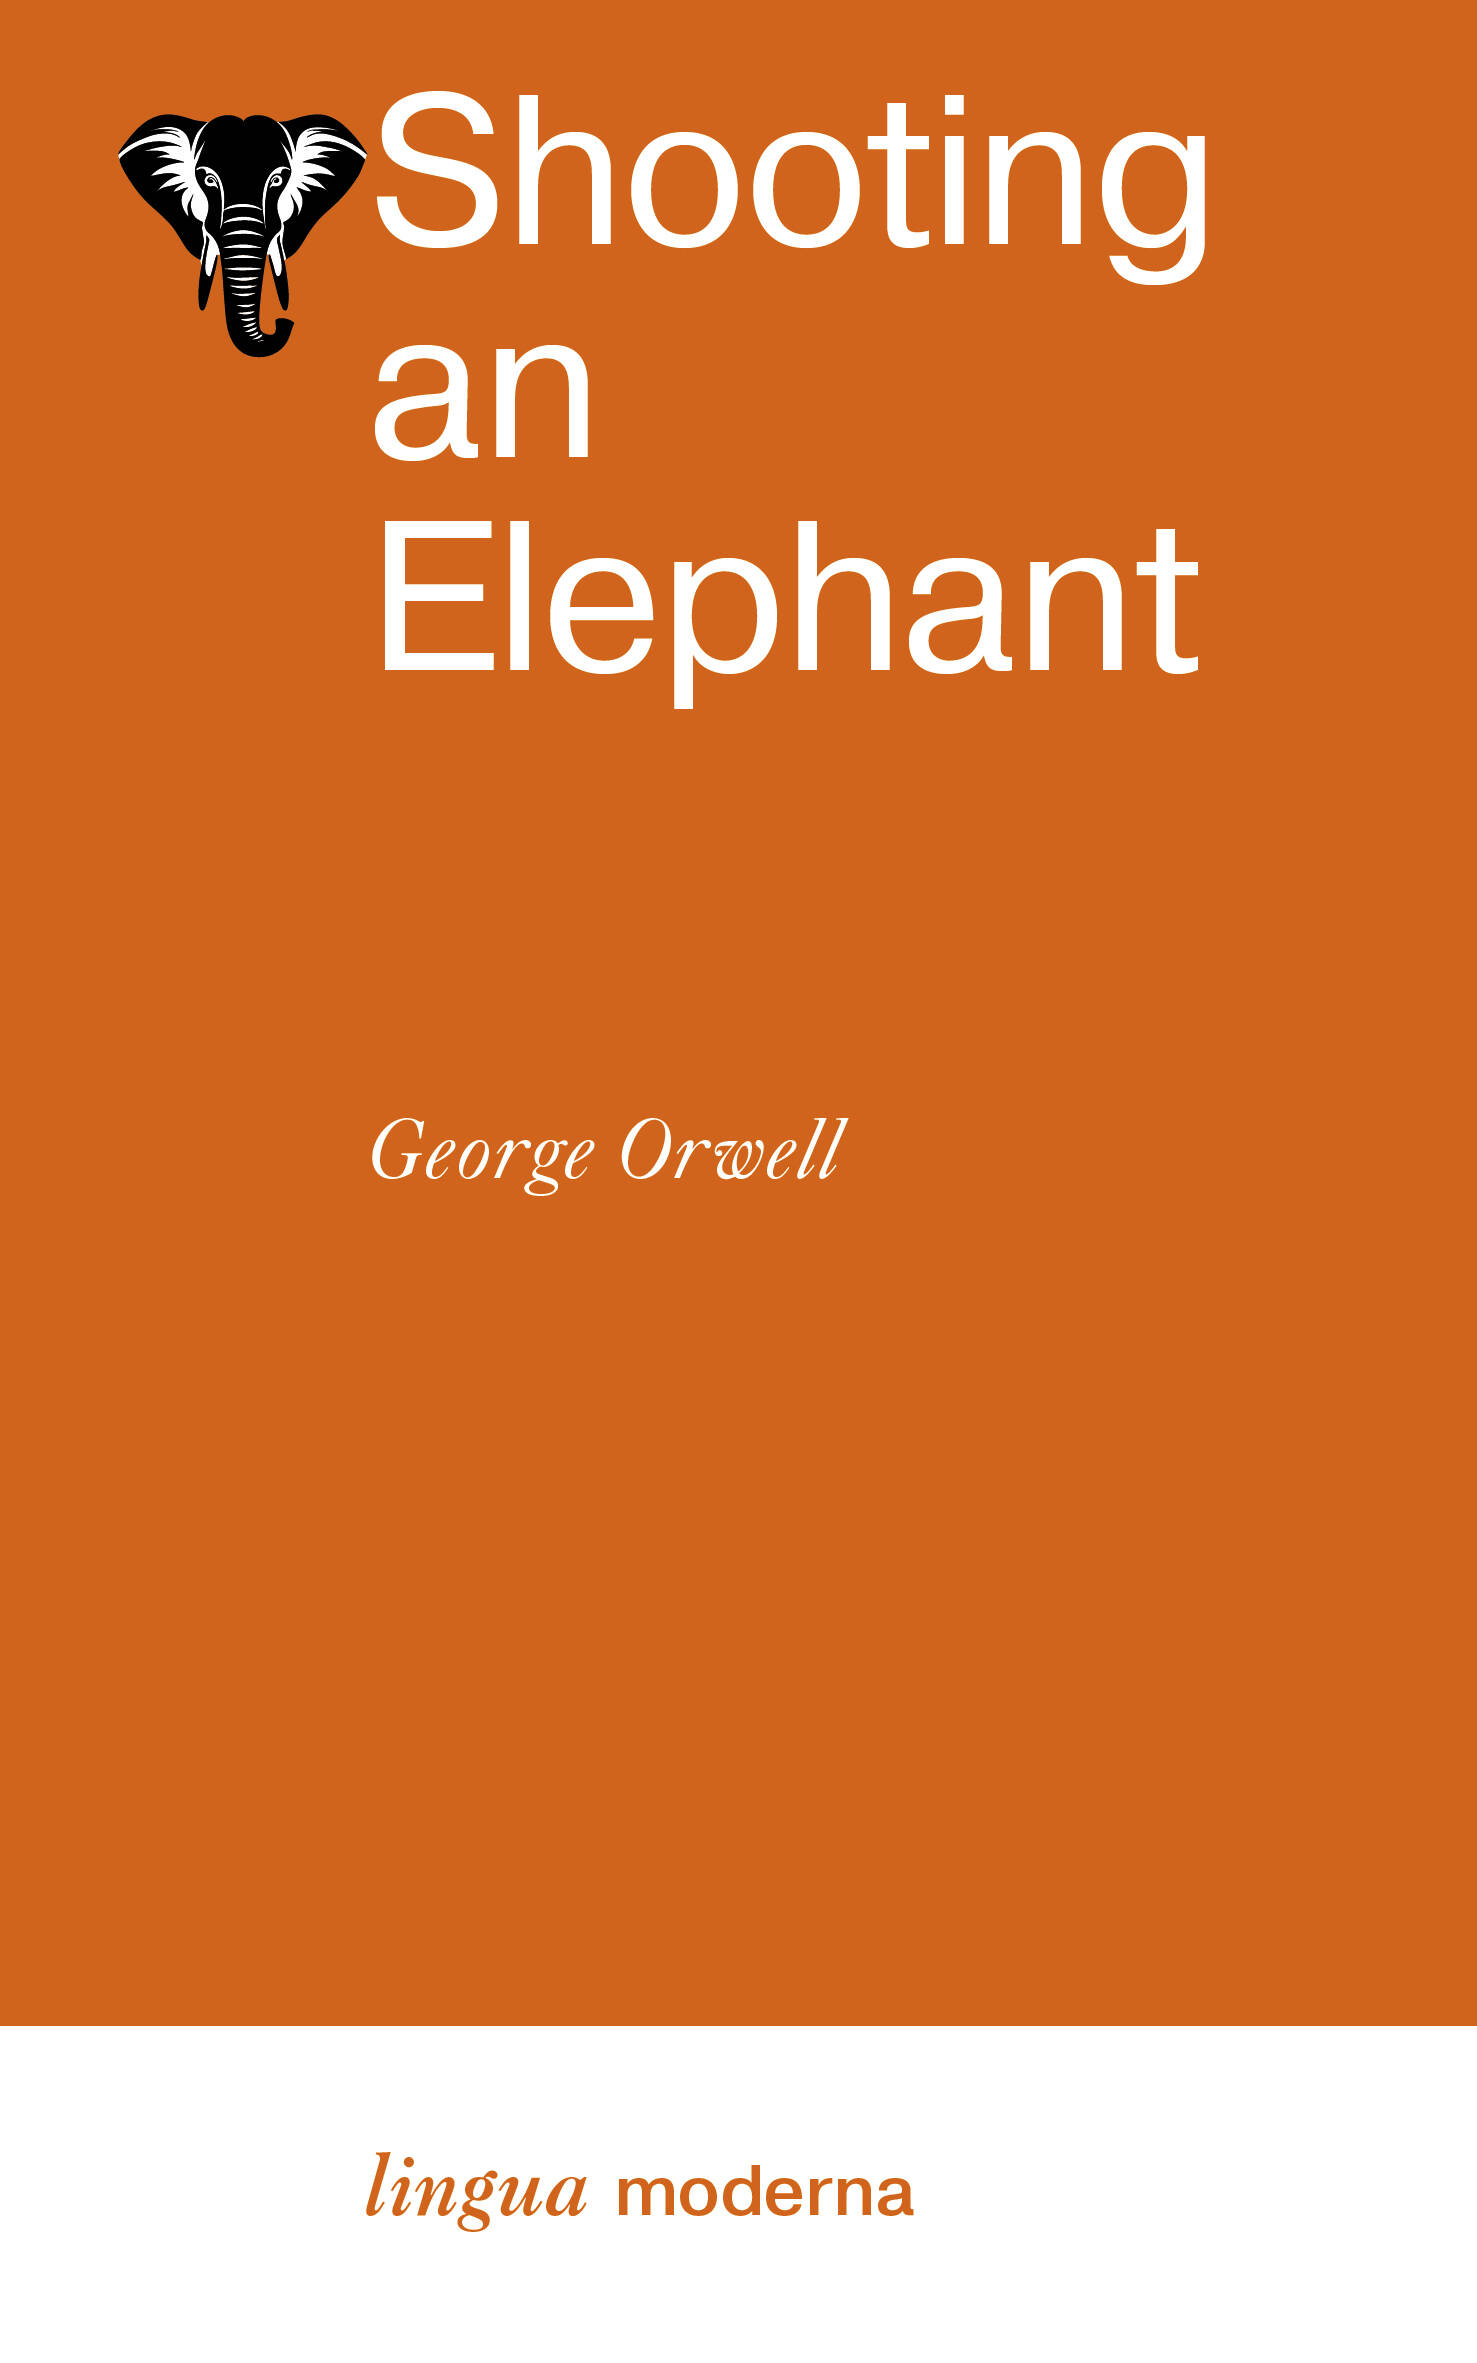 Shooting an Elephant shooting an elephant